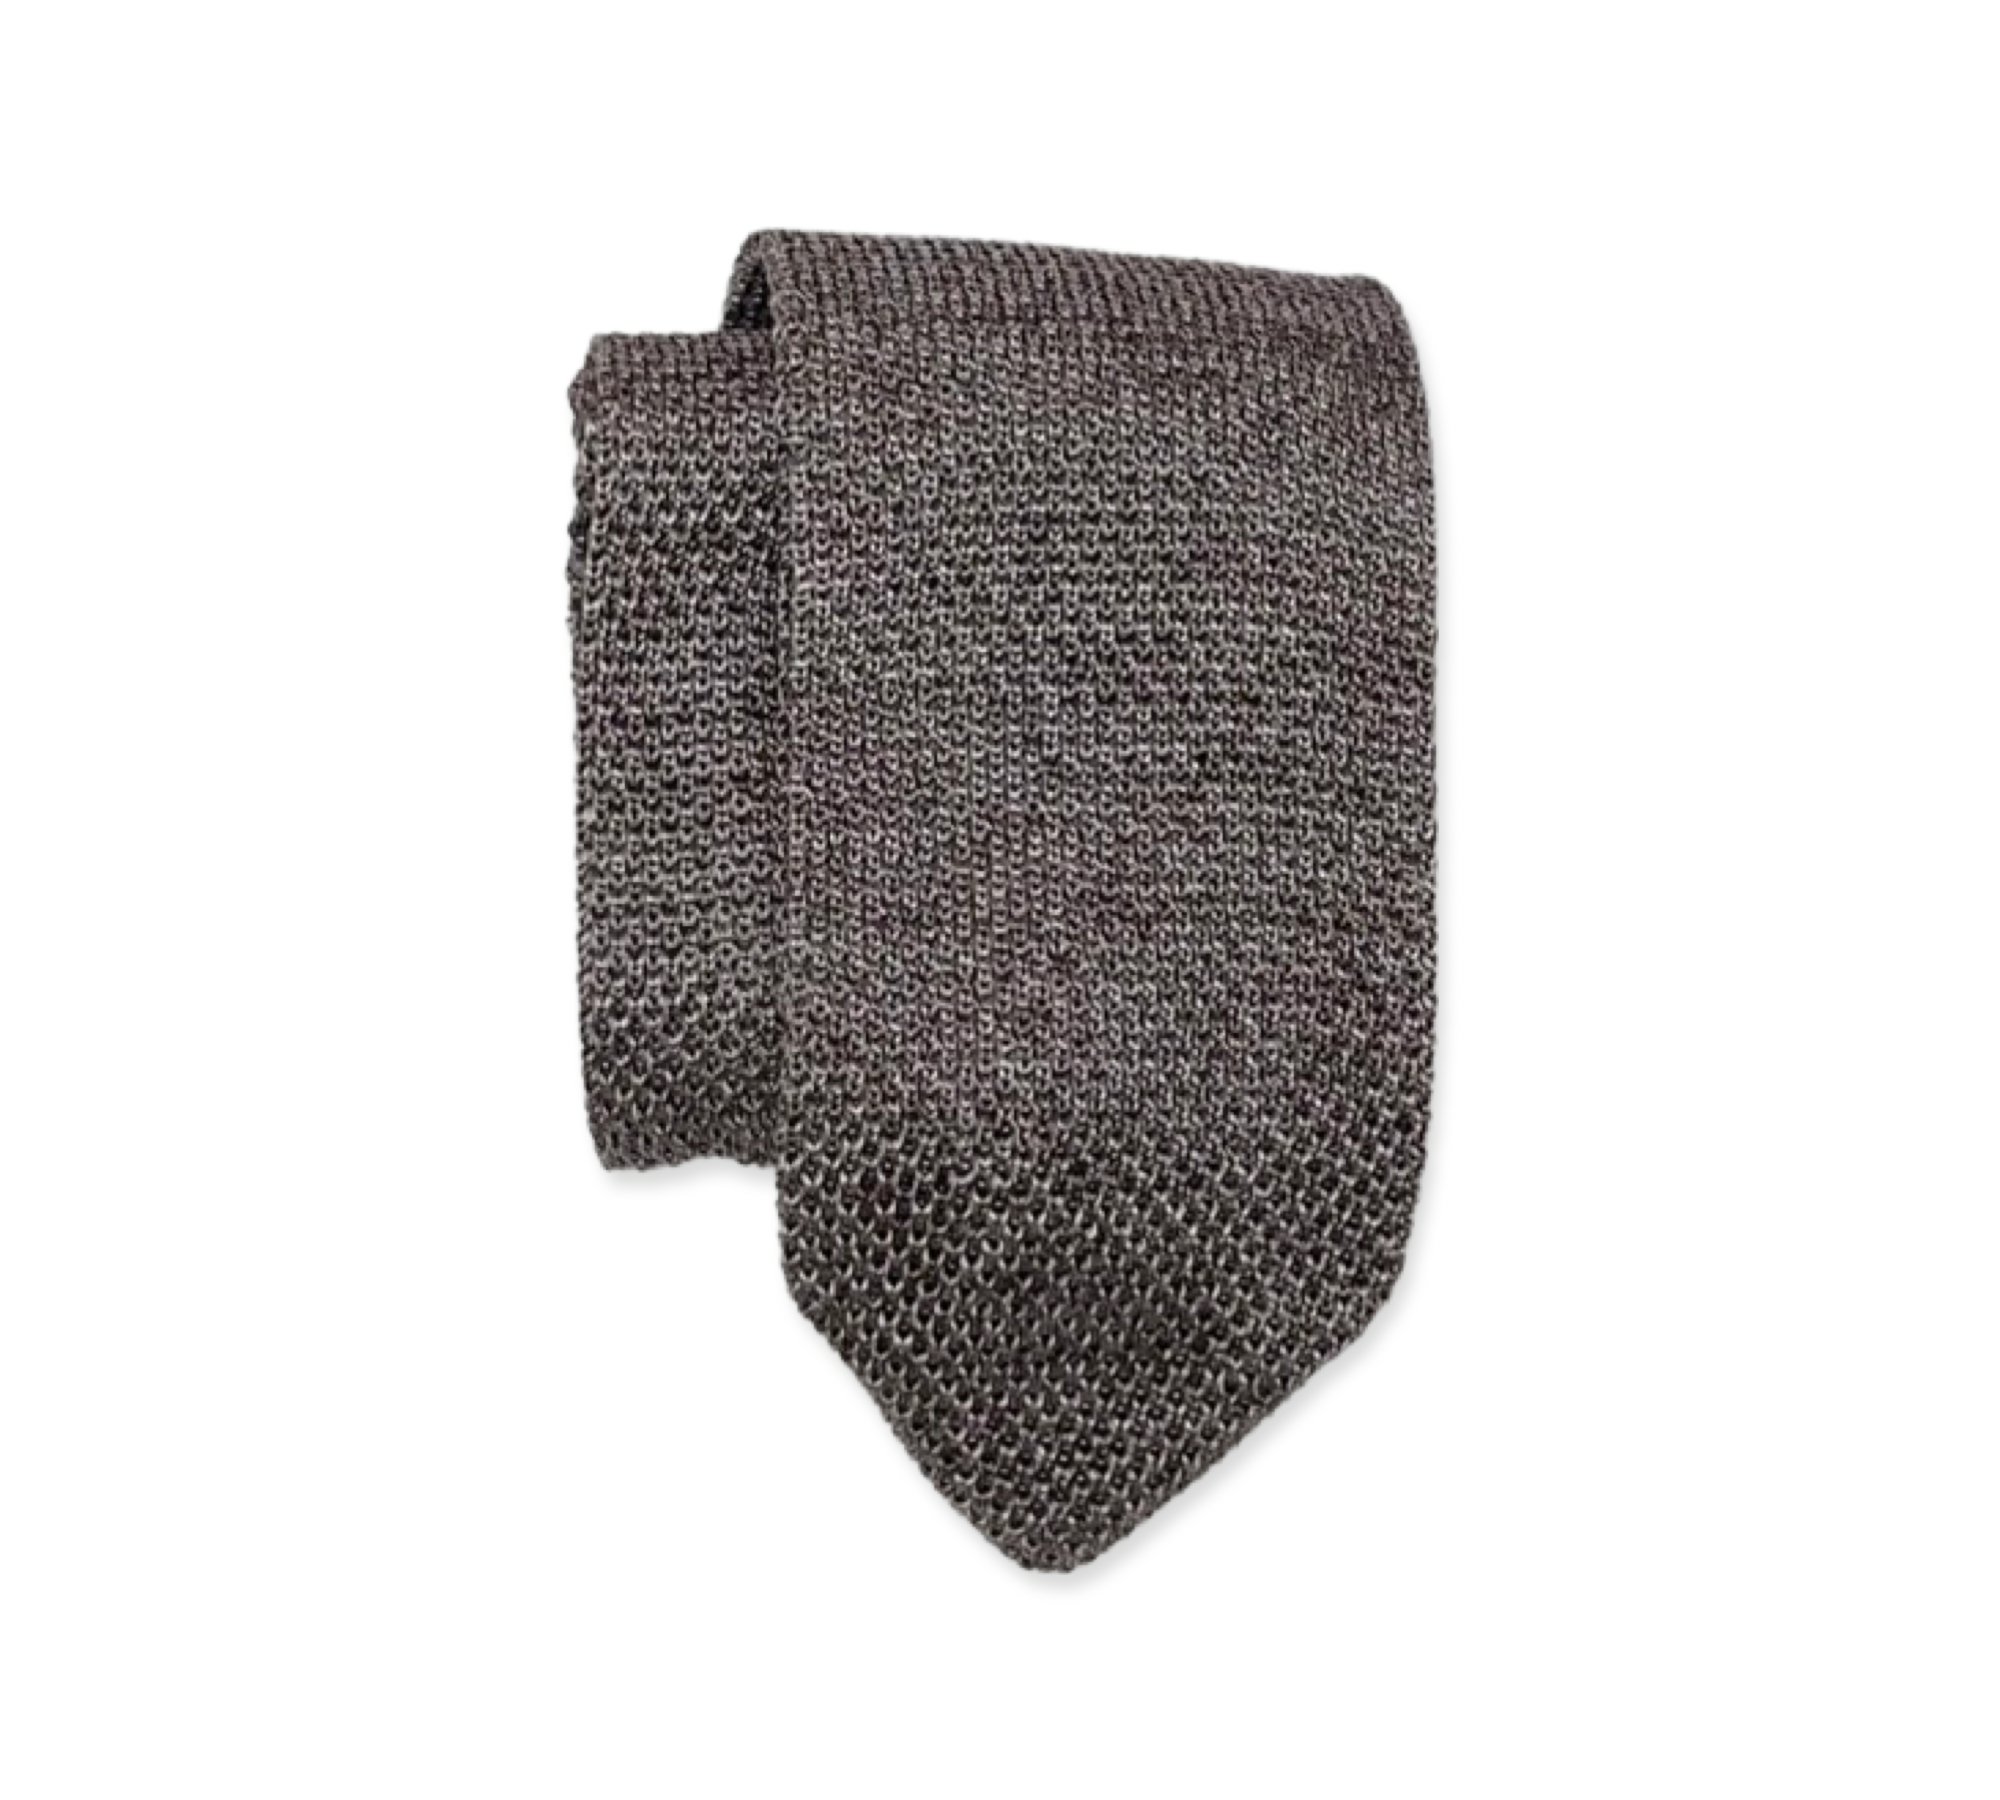 Light Brown Melange Knit Tie